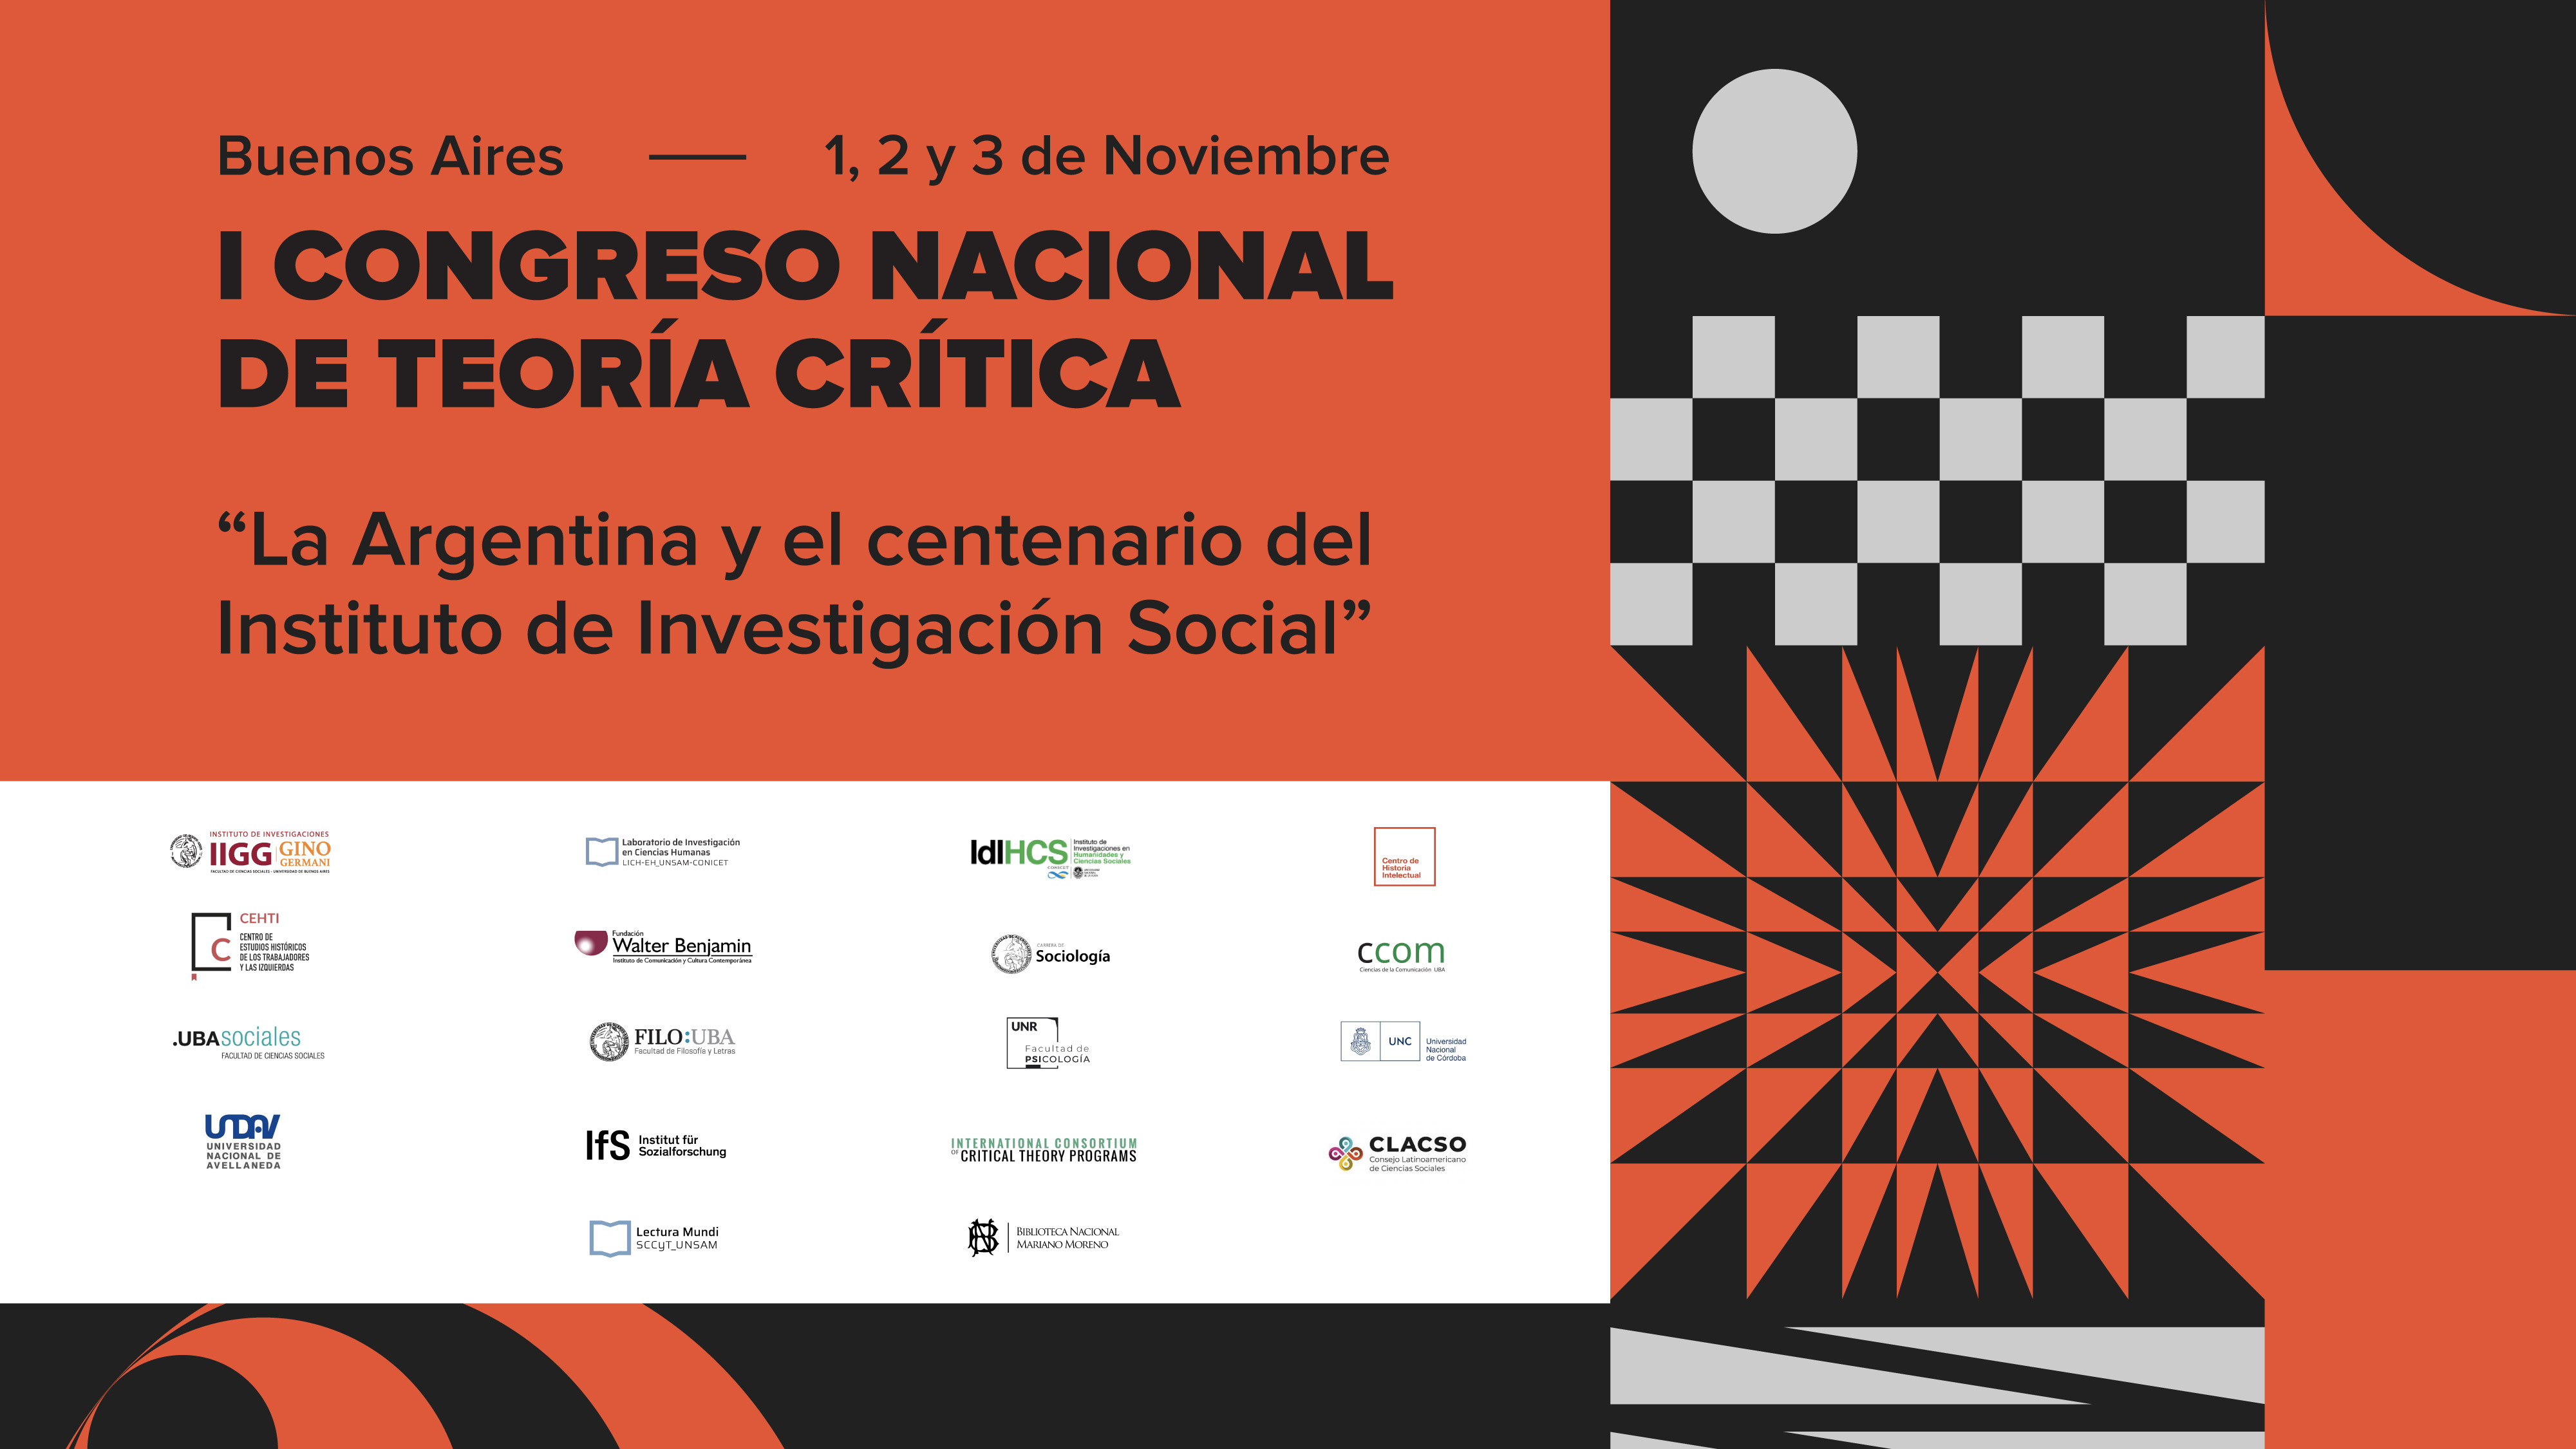 I Congreso Nacional de Teoría Crítica: “La Argentina y el centenario del Instituto de Investigación Social”